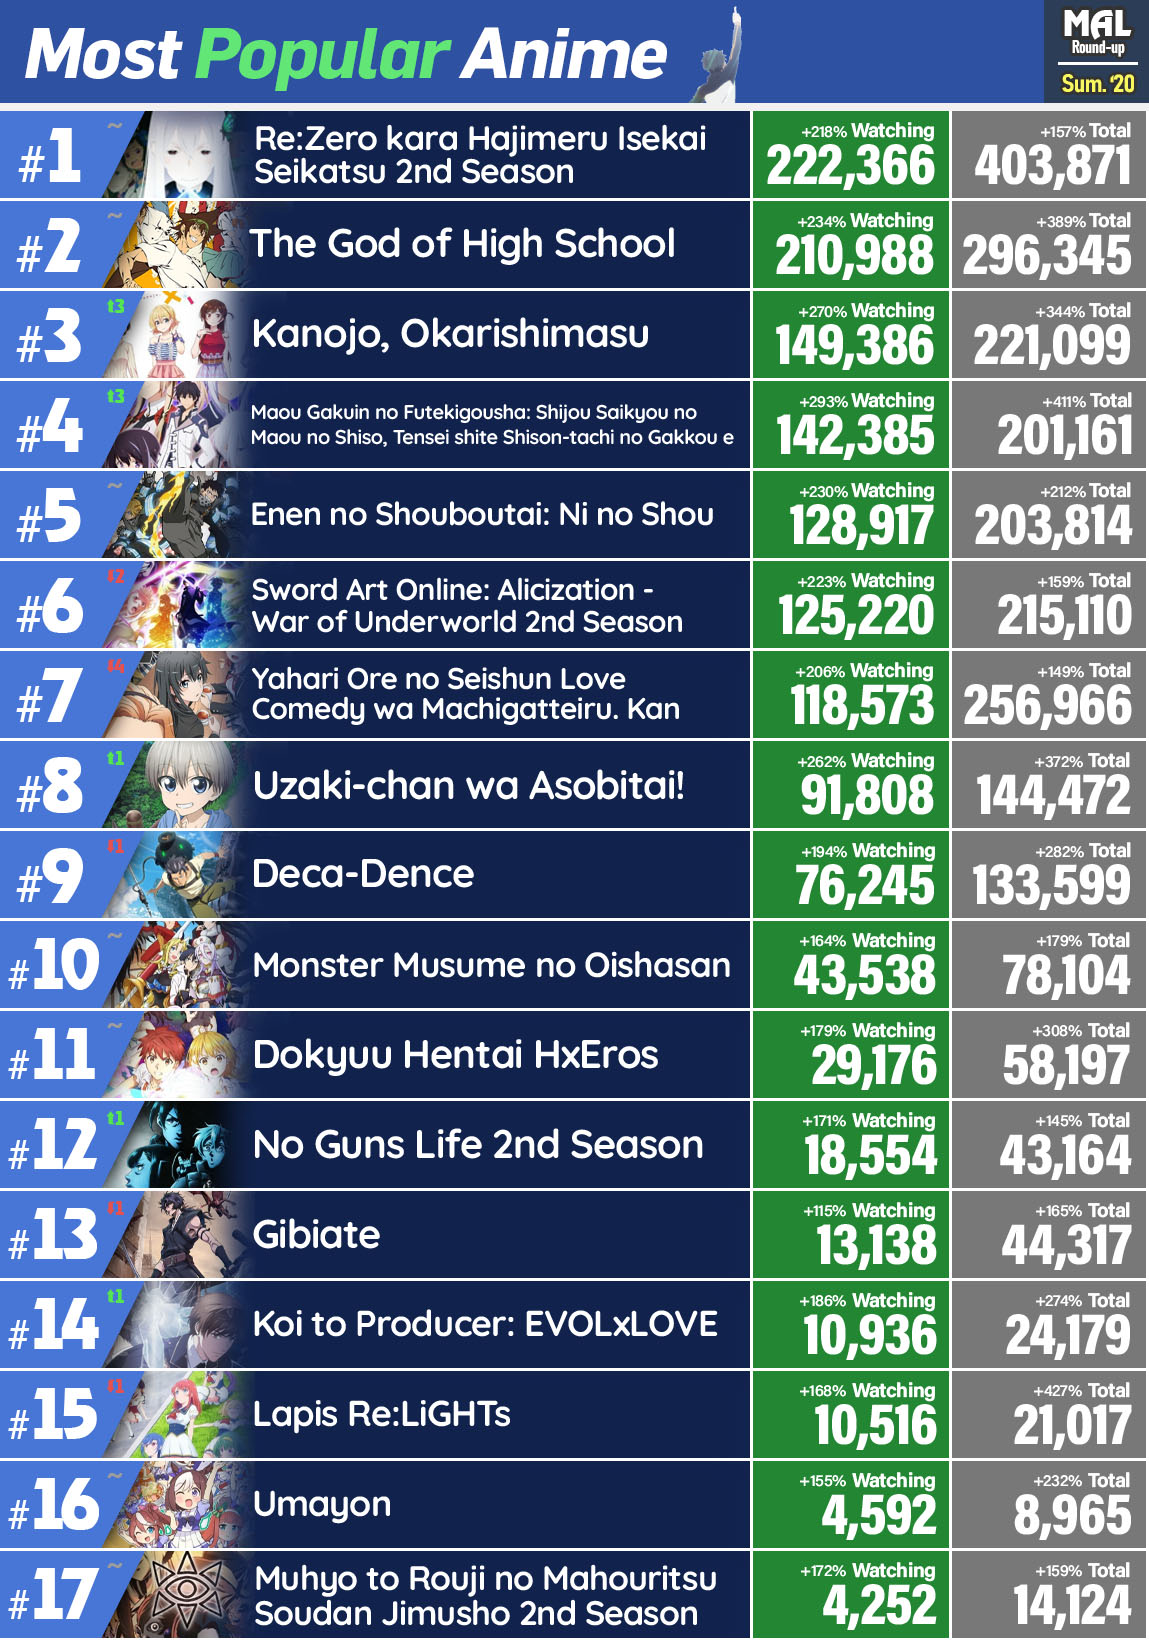 Lista dos animes mais populares da temporada de Verão 2020 Animedia